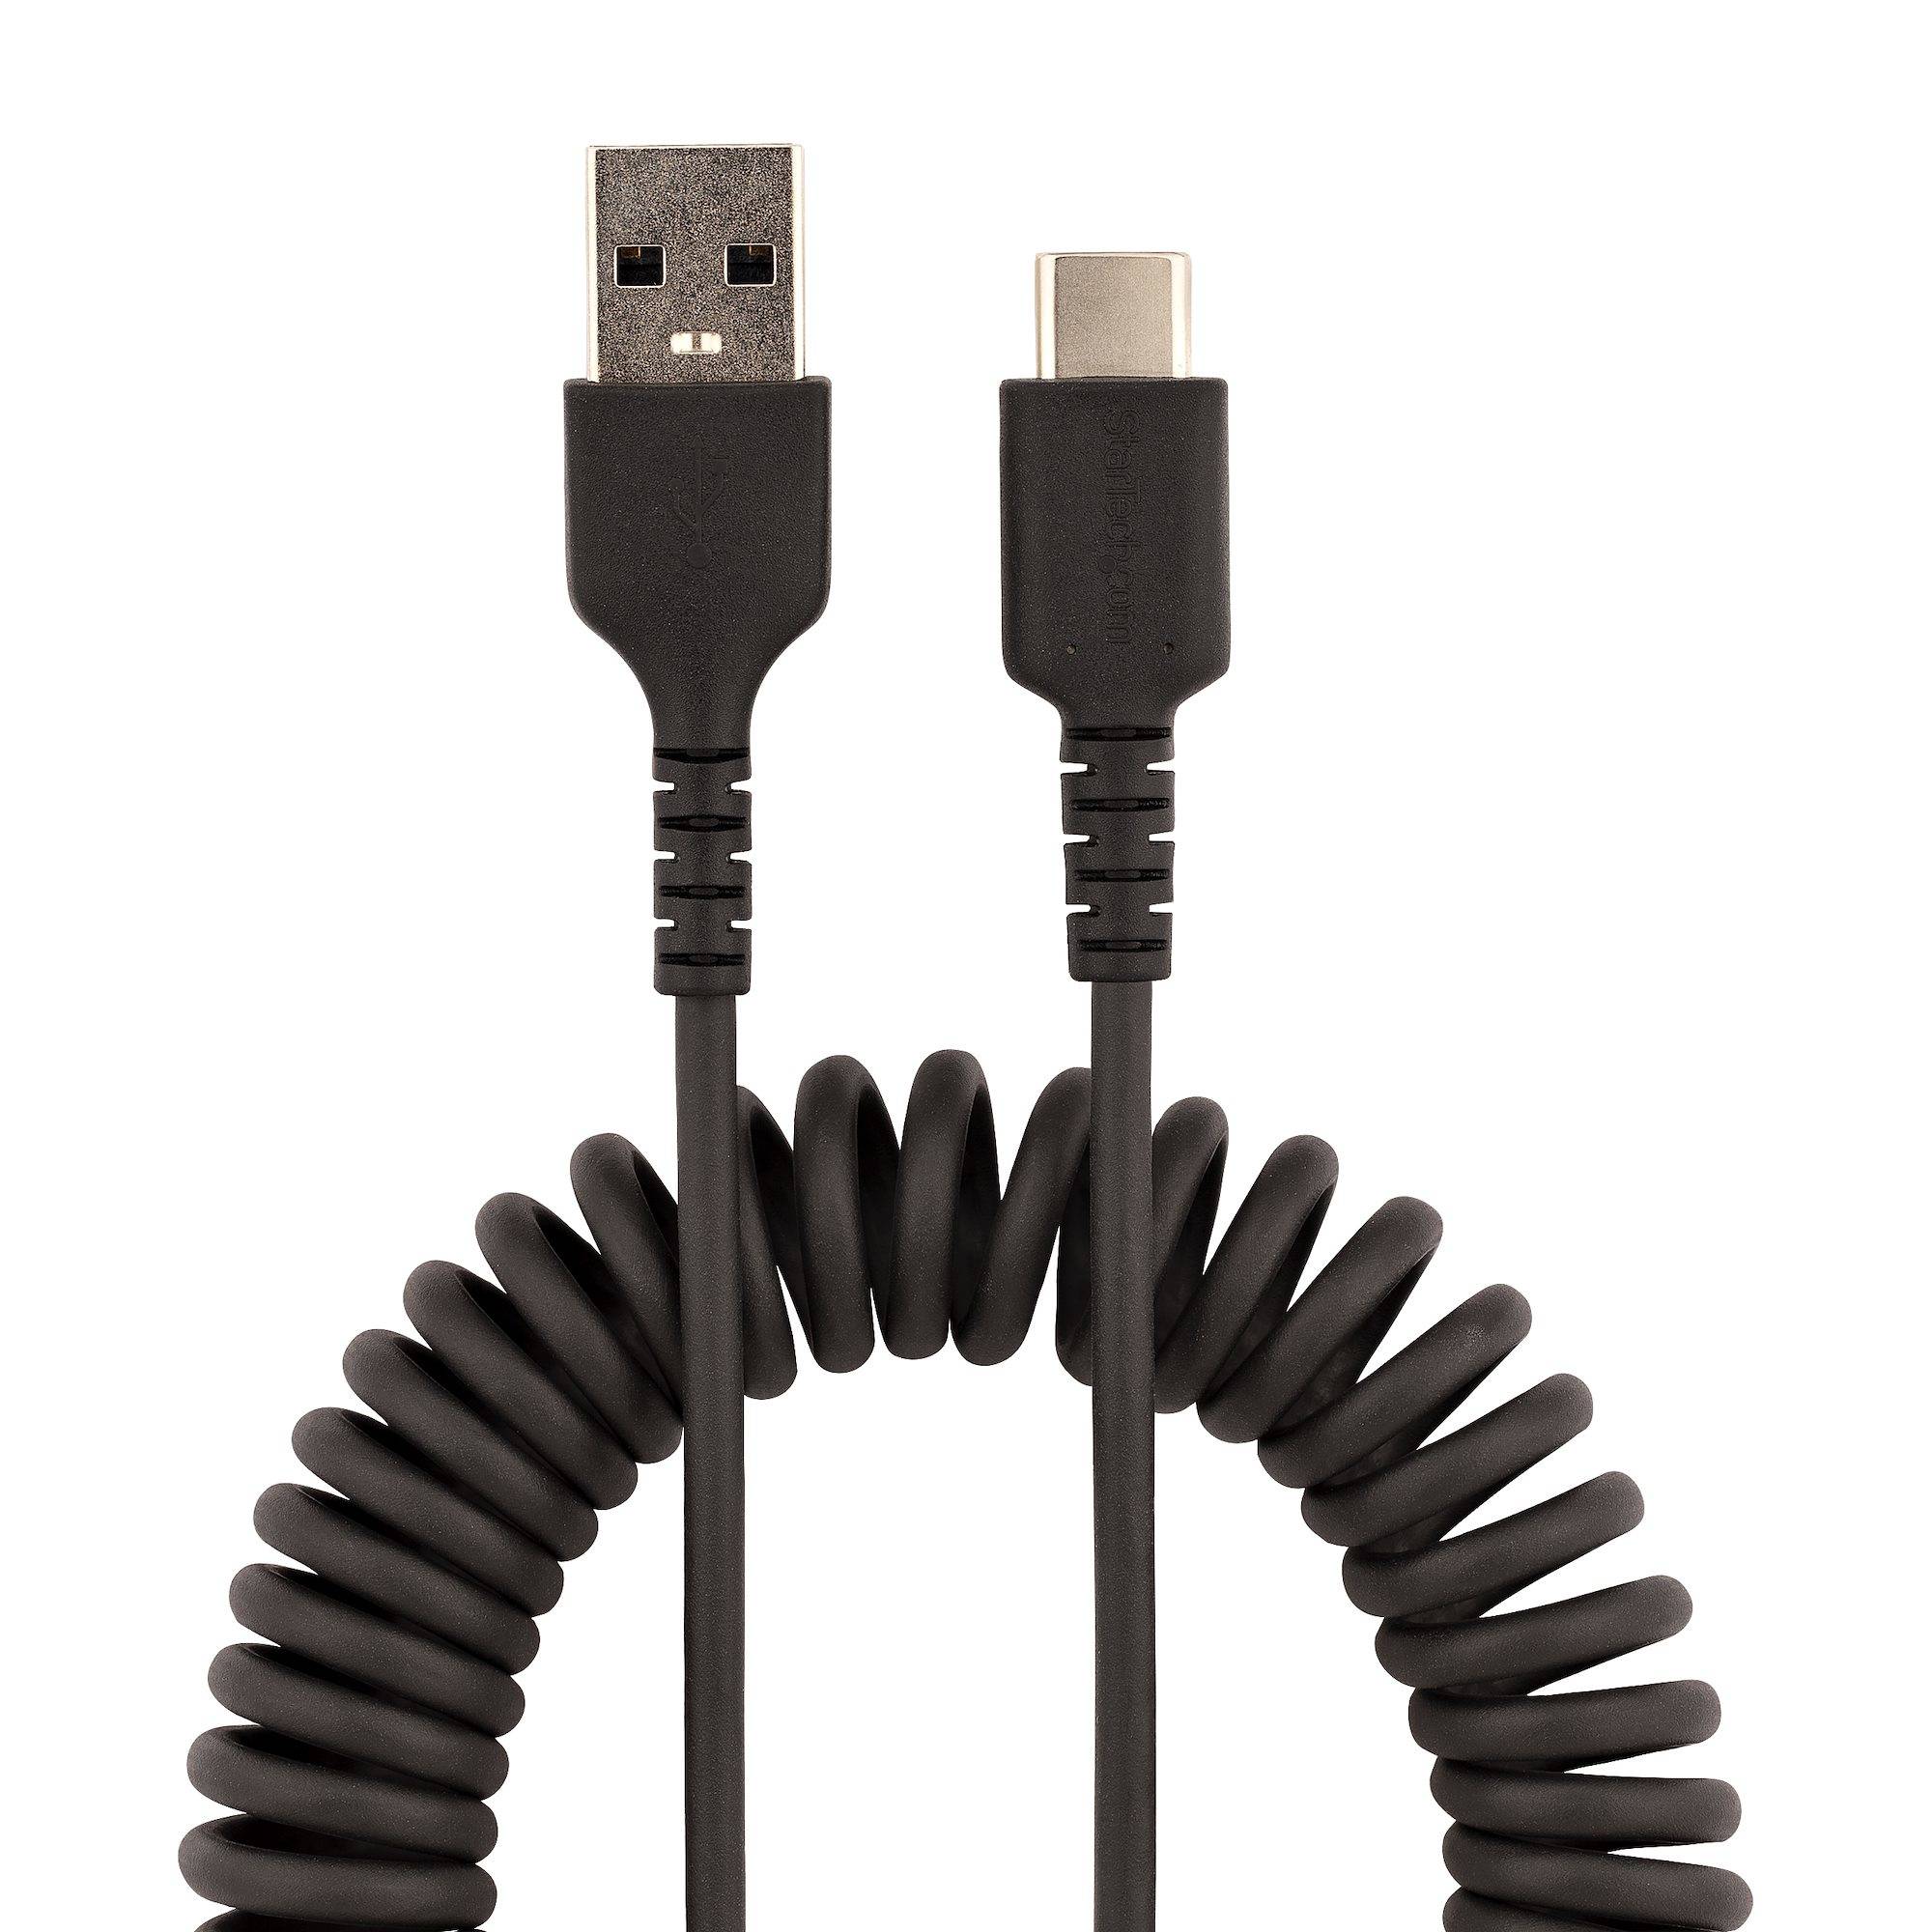 Rca Informatique - image du produit : CABLE USB VERS USB-C DE 50CM - CORDON USB-A A USB-C M/M NOIR